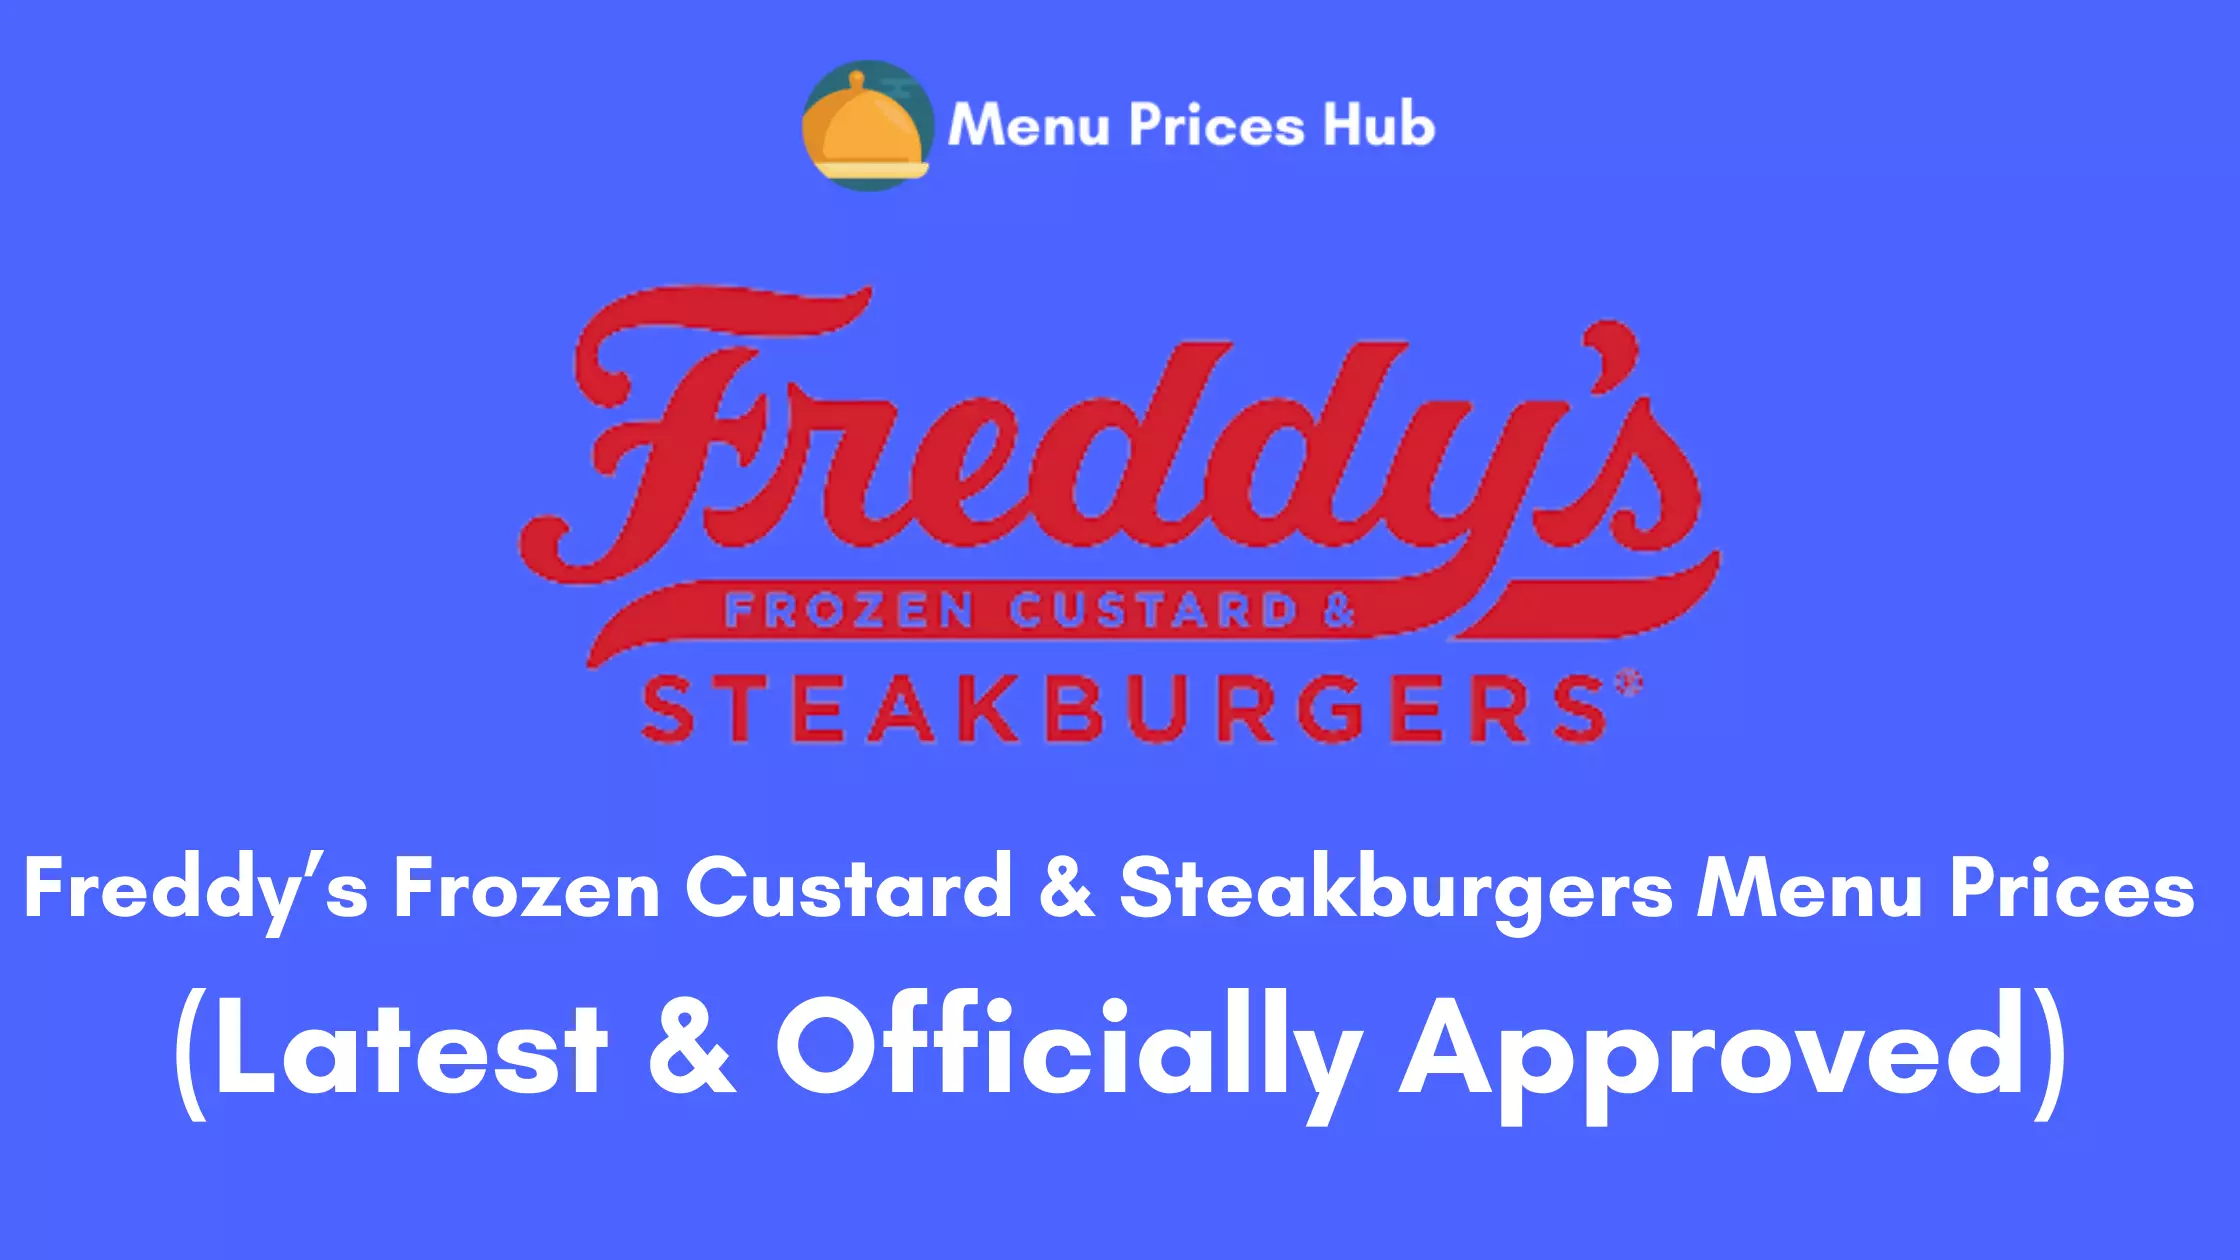 Freddy’s Frozen Custard & Steakburgers Menu Prices